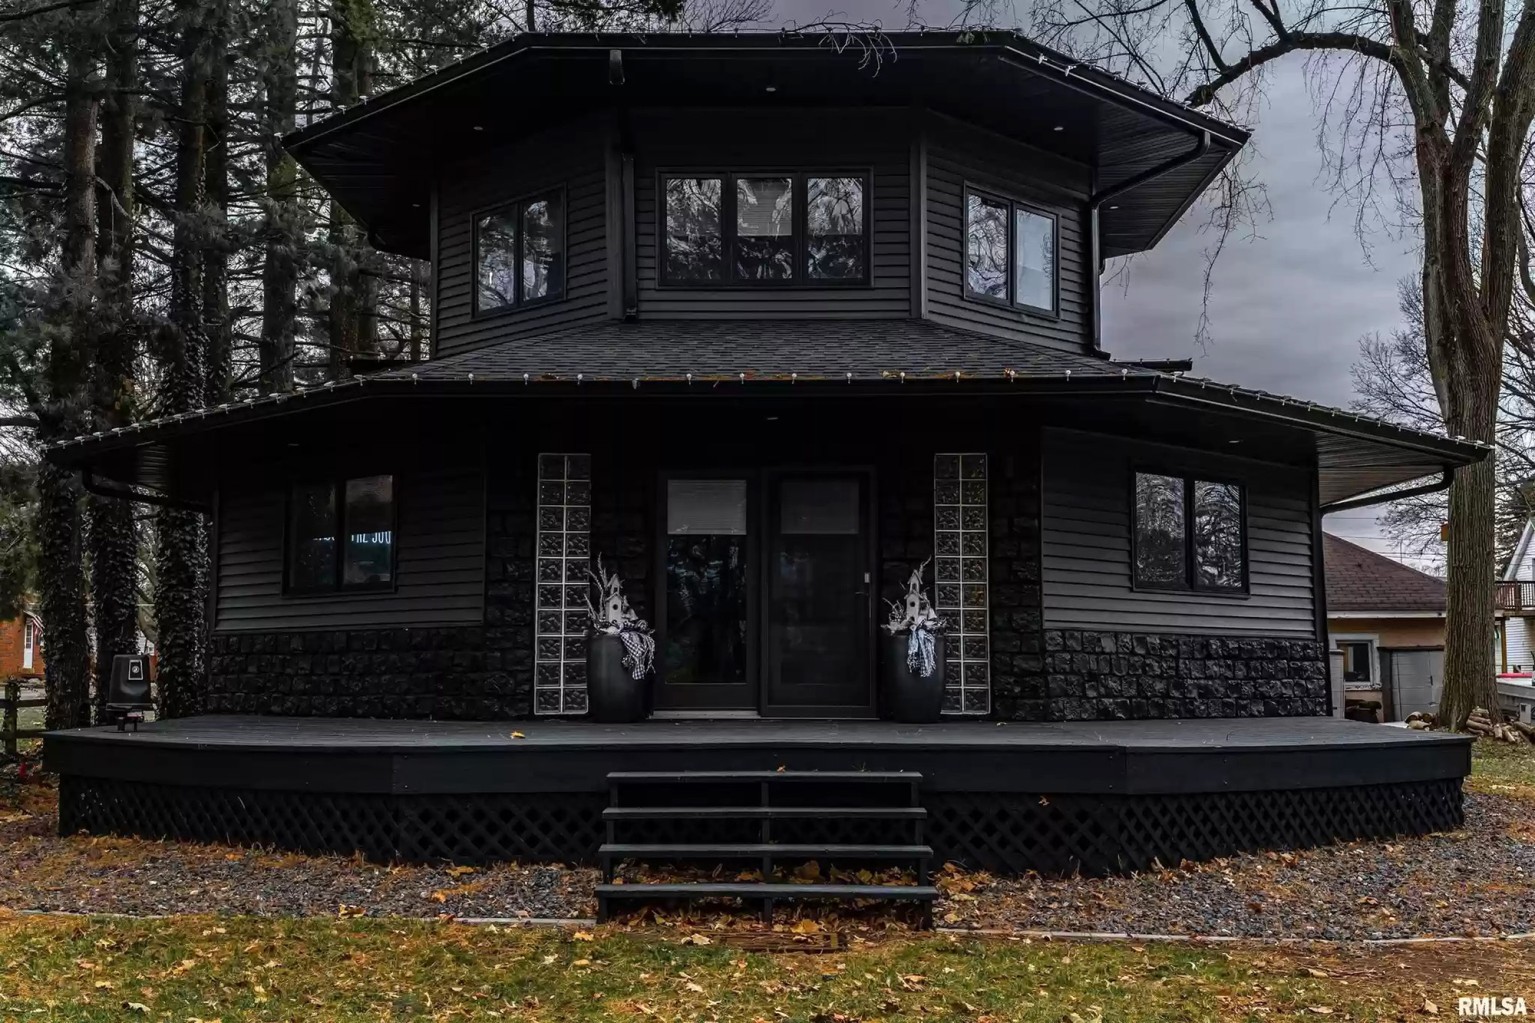 Sempat Viral, Hunian Serba Hitam Ini Dijuluki Rumah Gothic dan Dirancang Voldermort